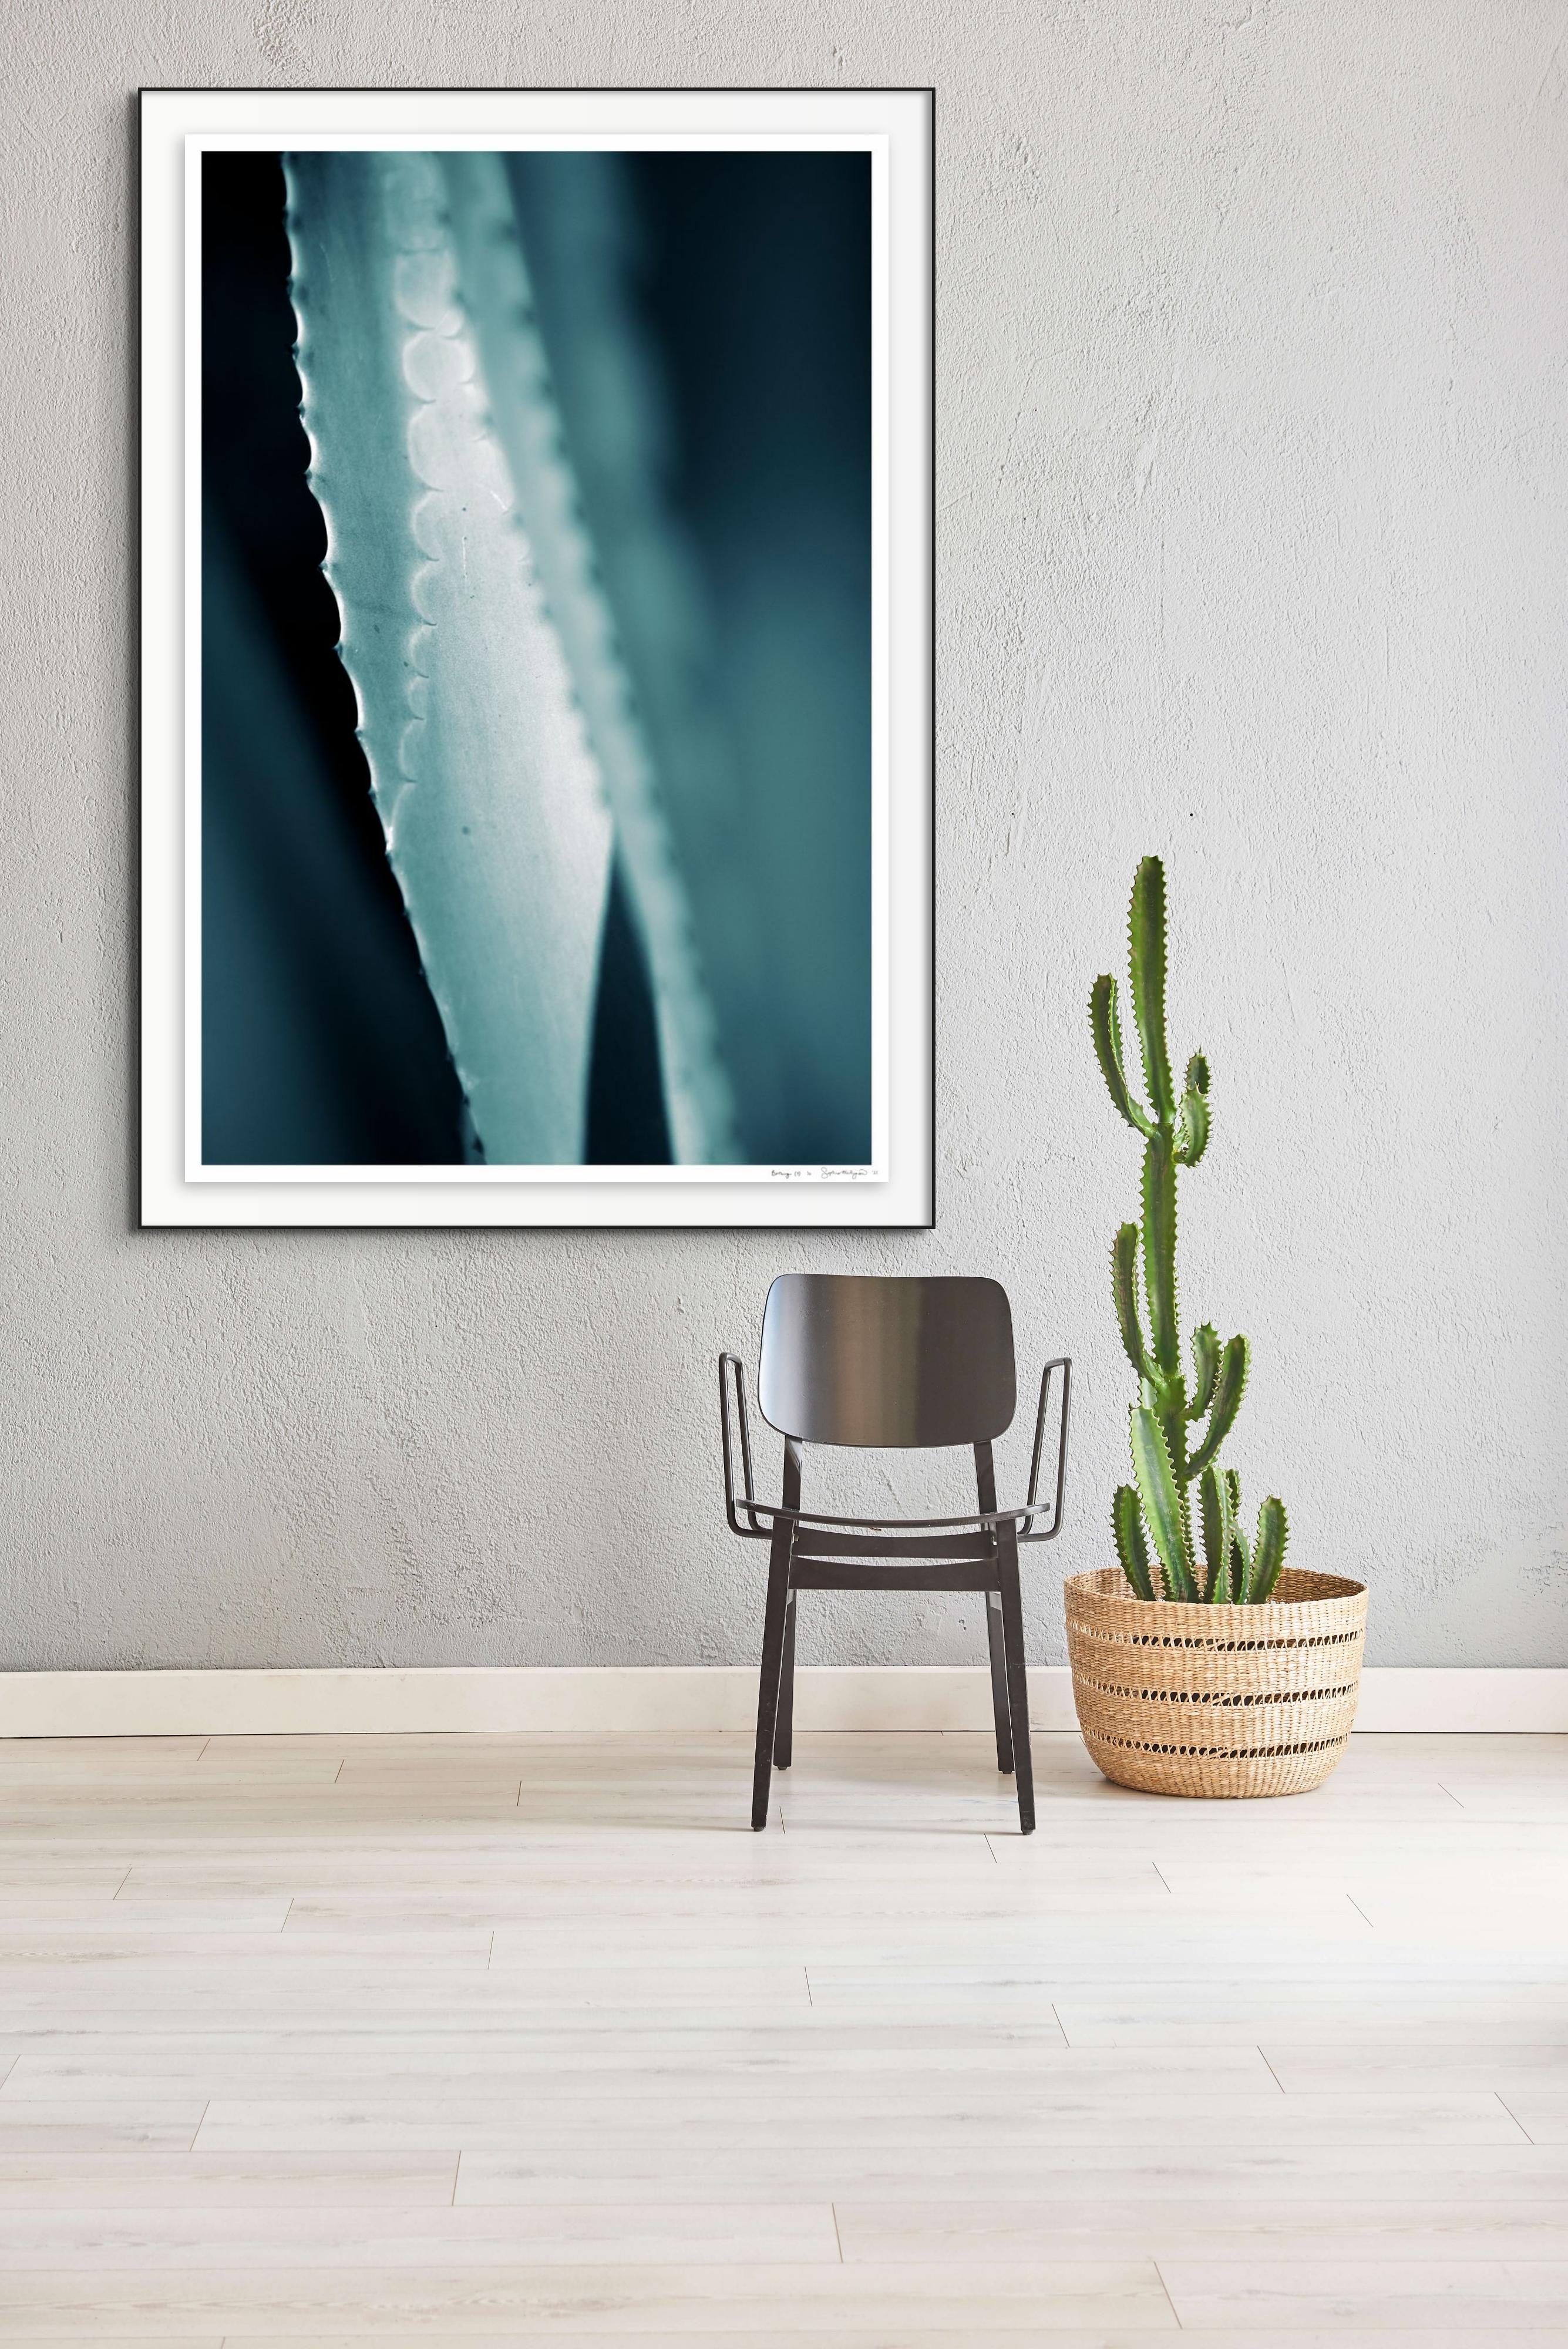 Großformatiges Foto „Cicatrices 1“. Blatt Agave-Blatt, Wüste, tropisches Blau, Tealgrün  – Photograph von Sophia Milligan